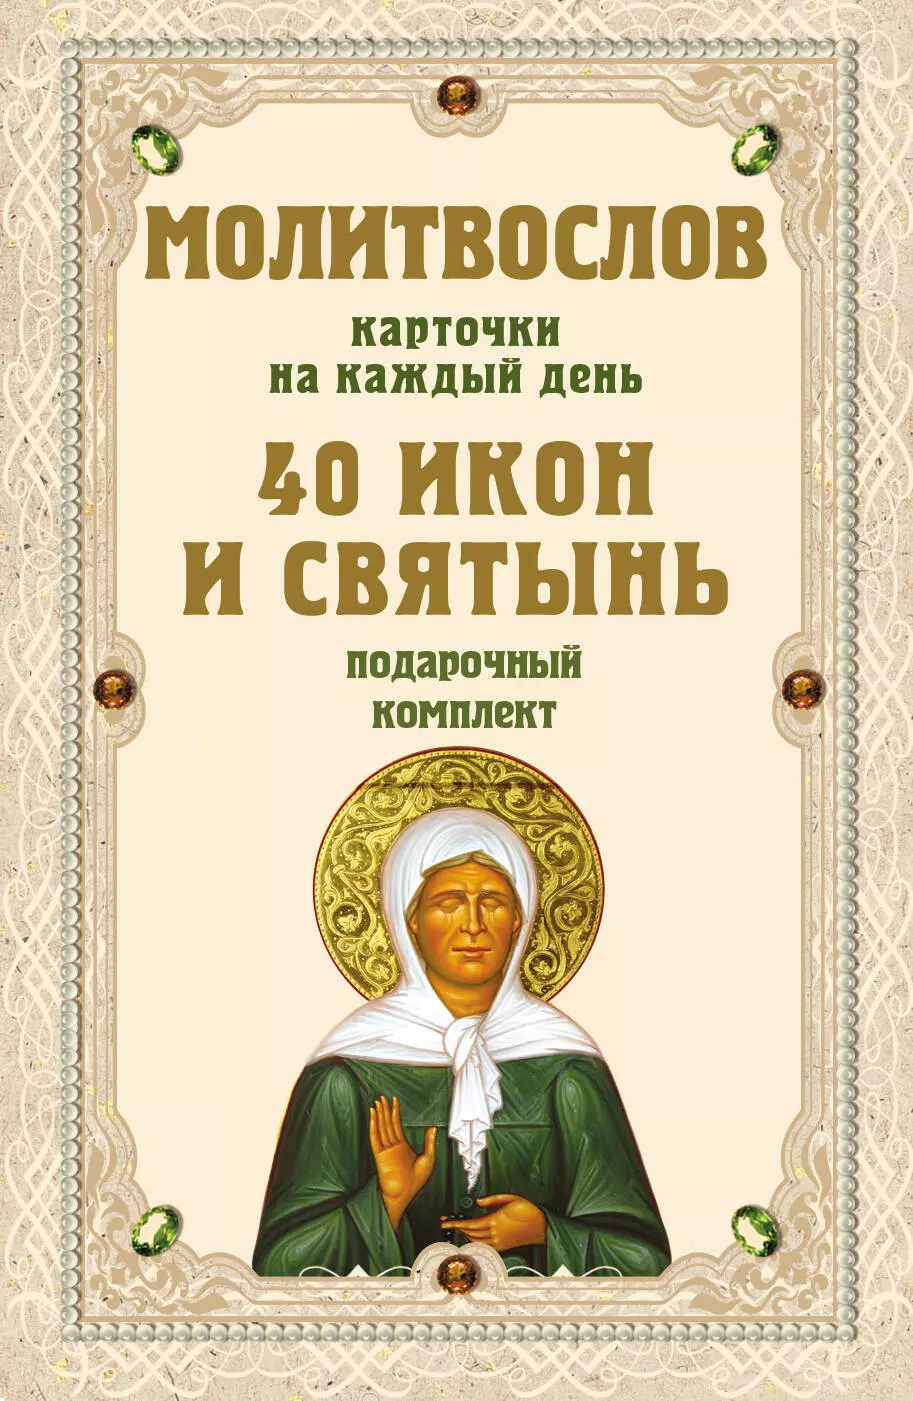 Молитвослов на каждый день. 40 икон и святынь православный молитвослов на каждый день и час